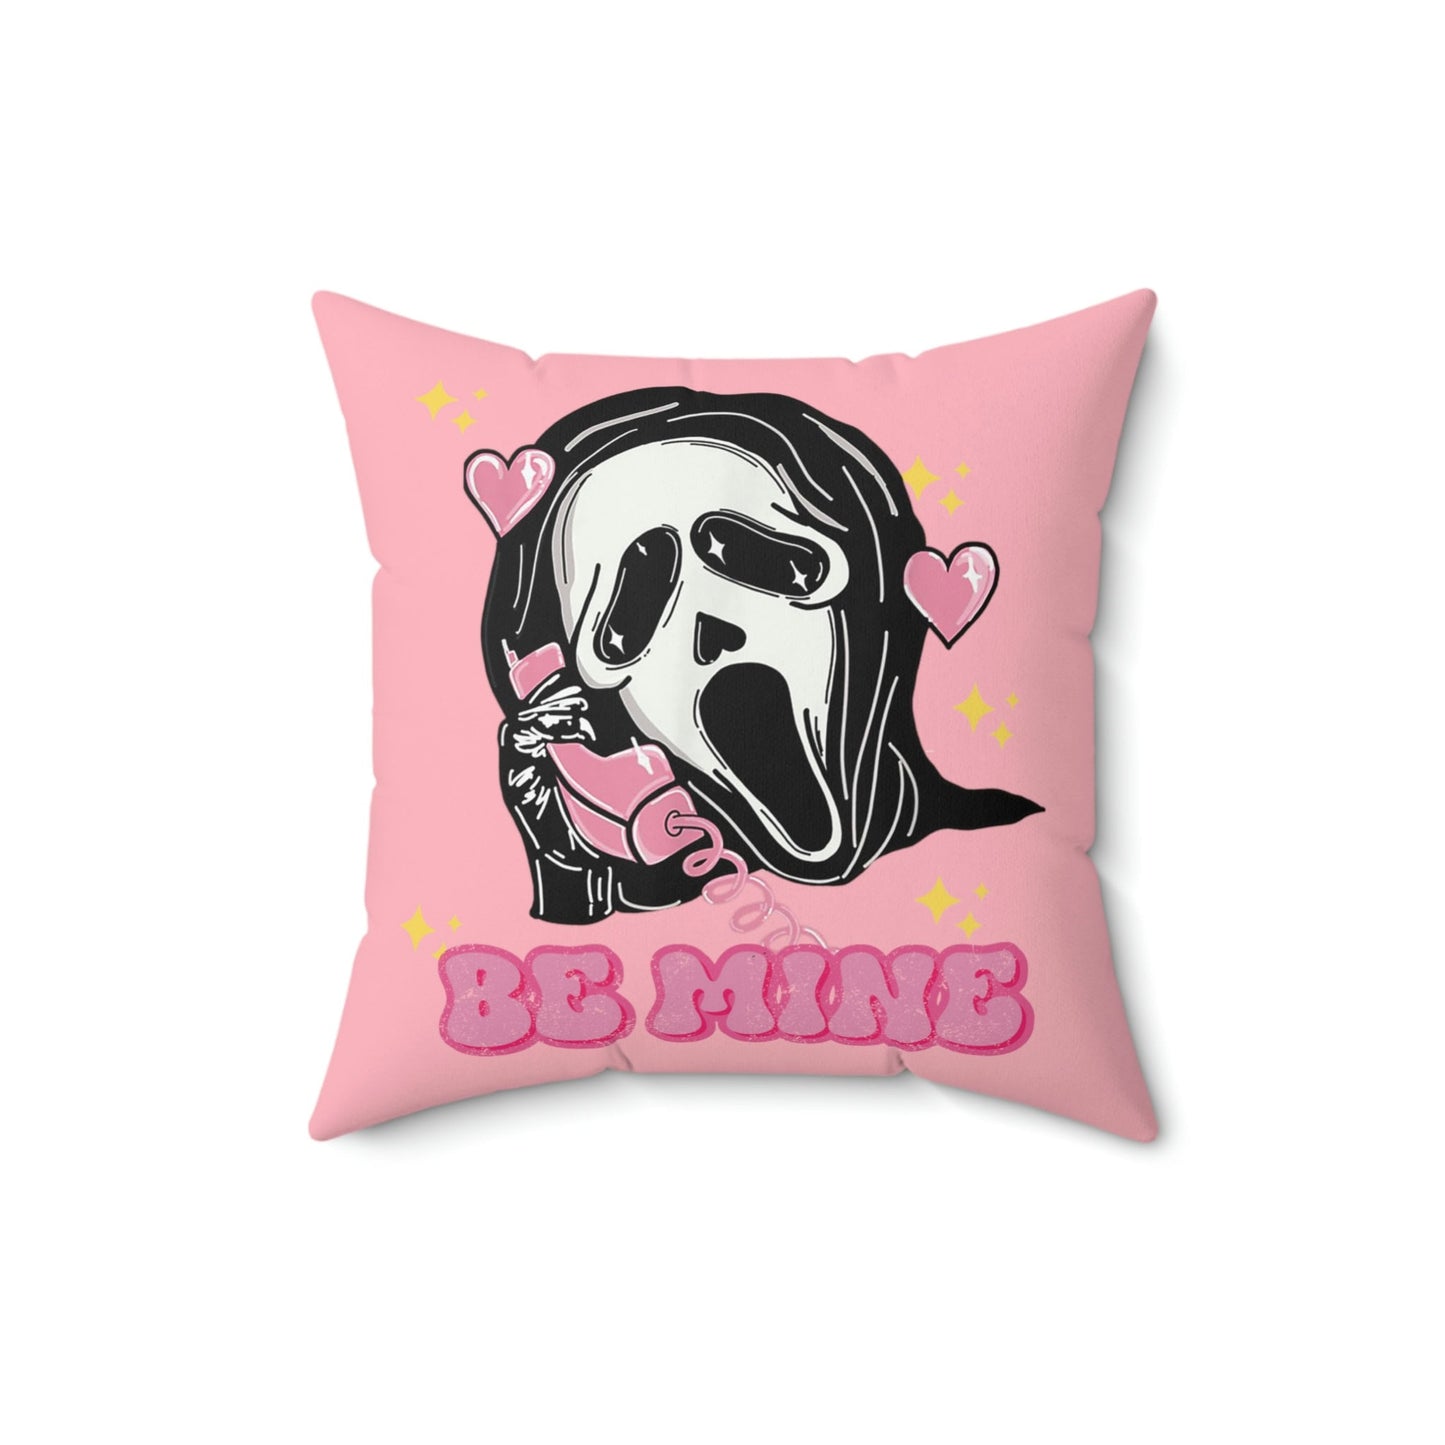 Ghostface Decor, Scream Pillow, Halloween pillow, Horror decor, Horror merch, Horror pillow, Halloween aesthetic, Halloween merch